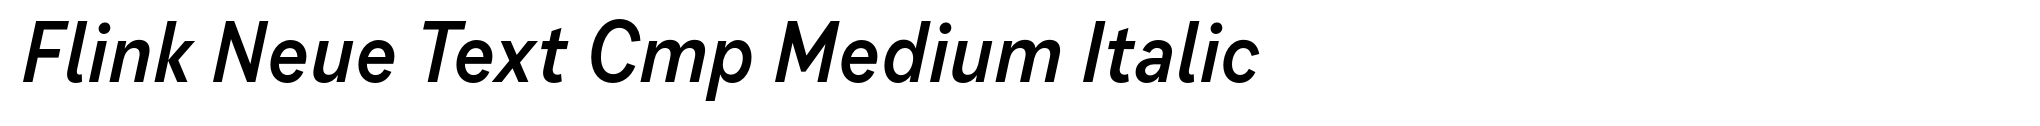 Flink Neue Text Cmp Medium Italic image